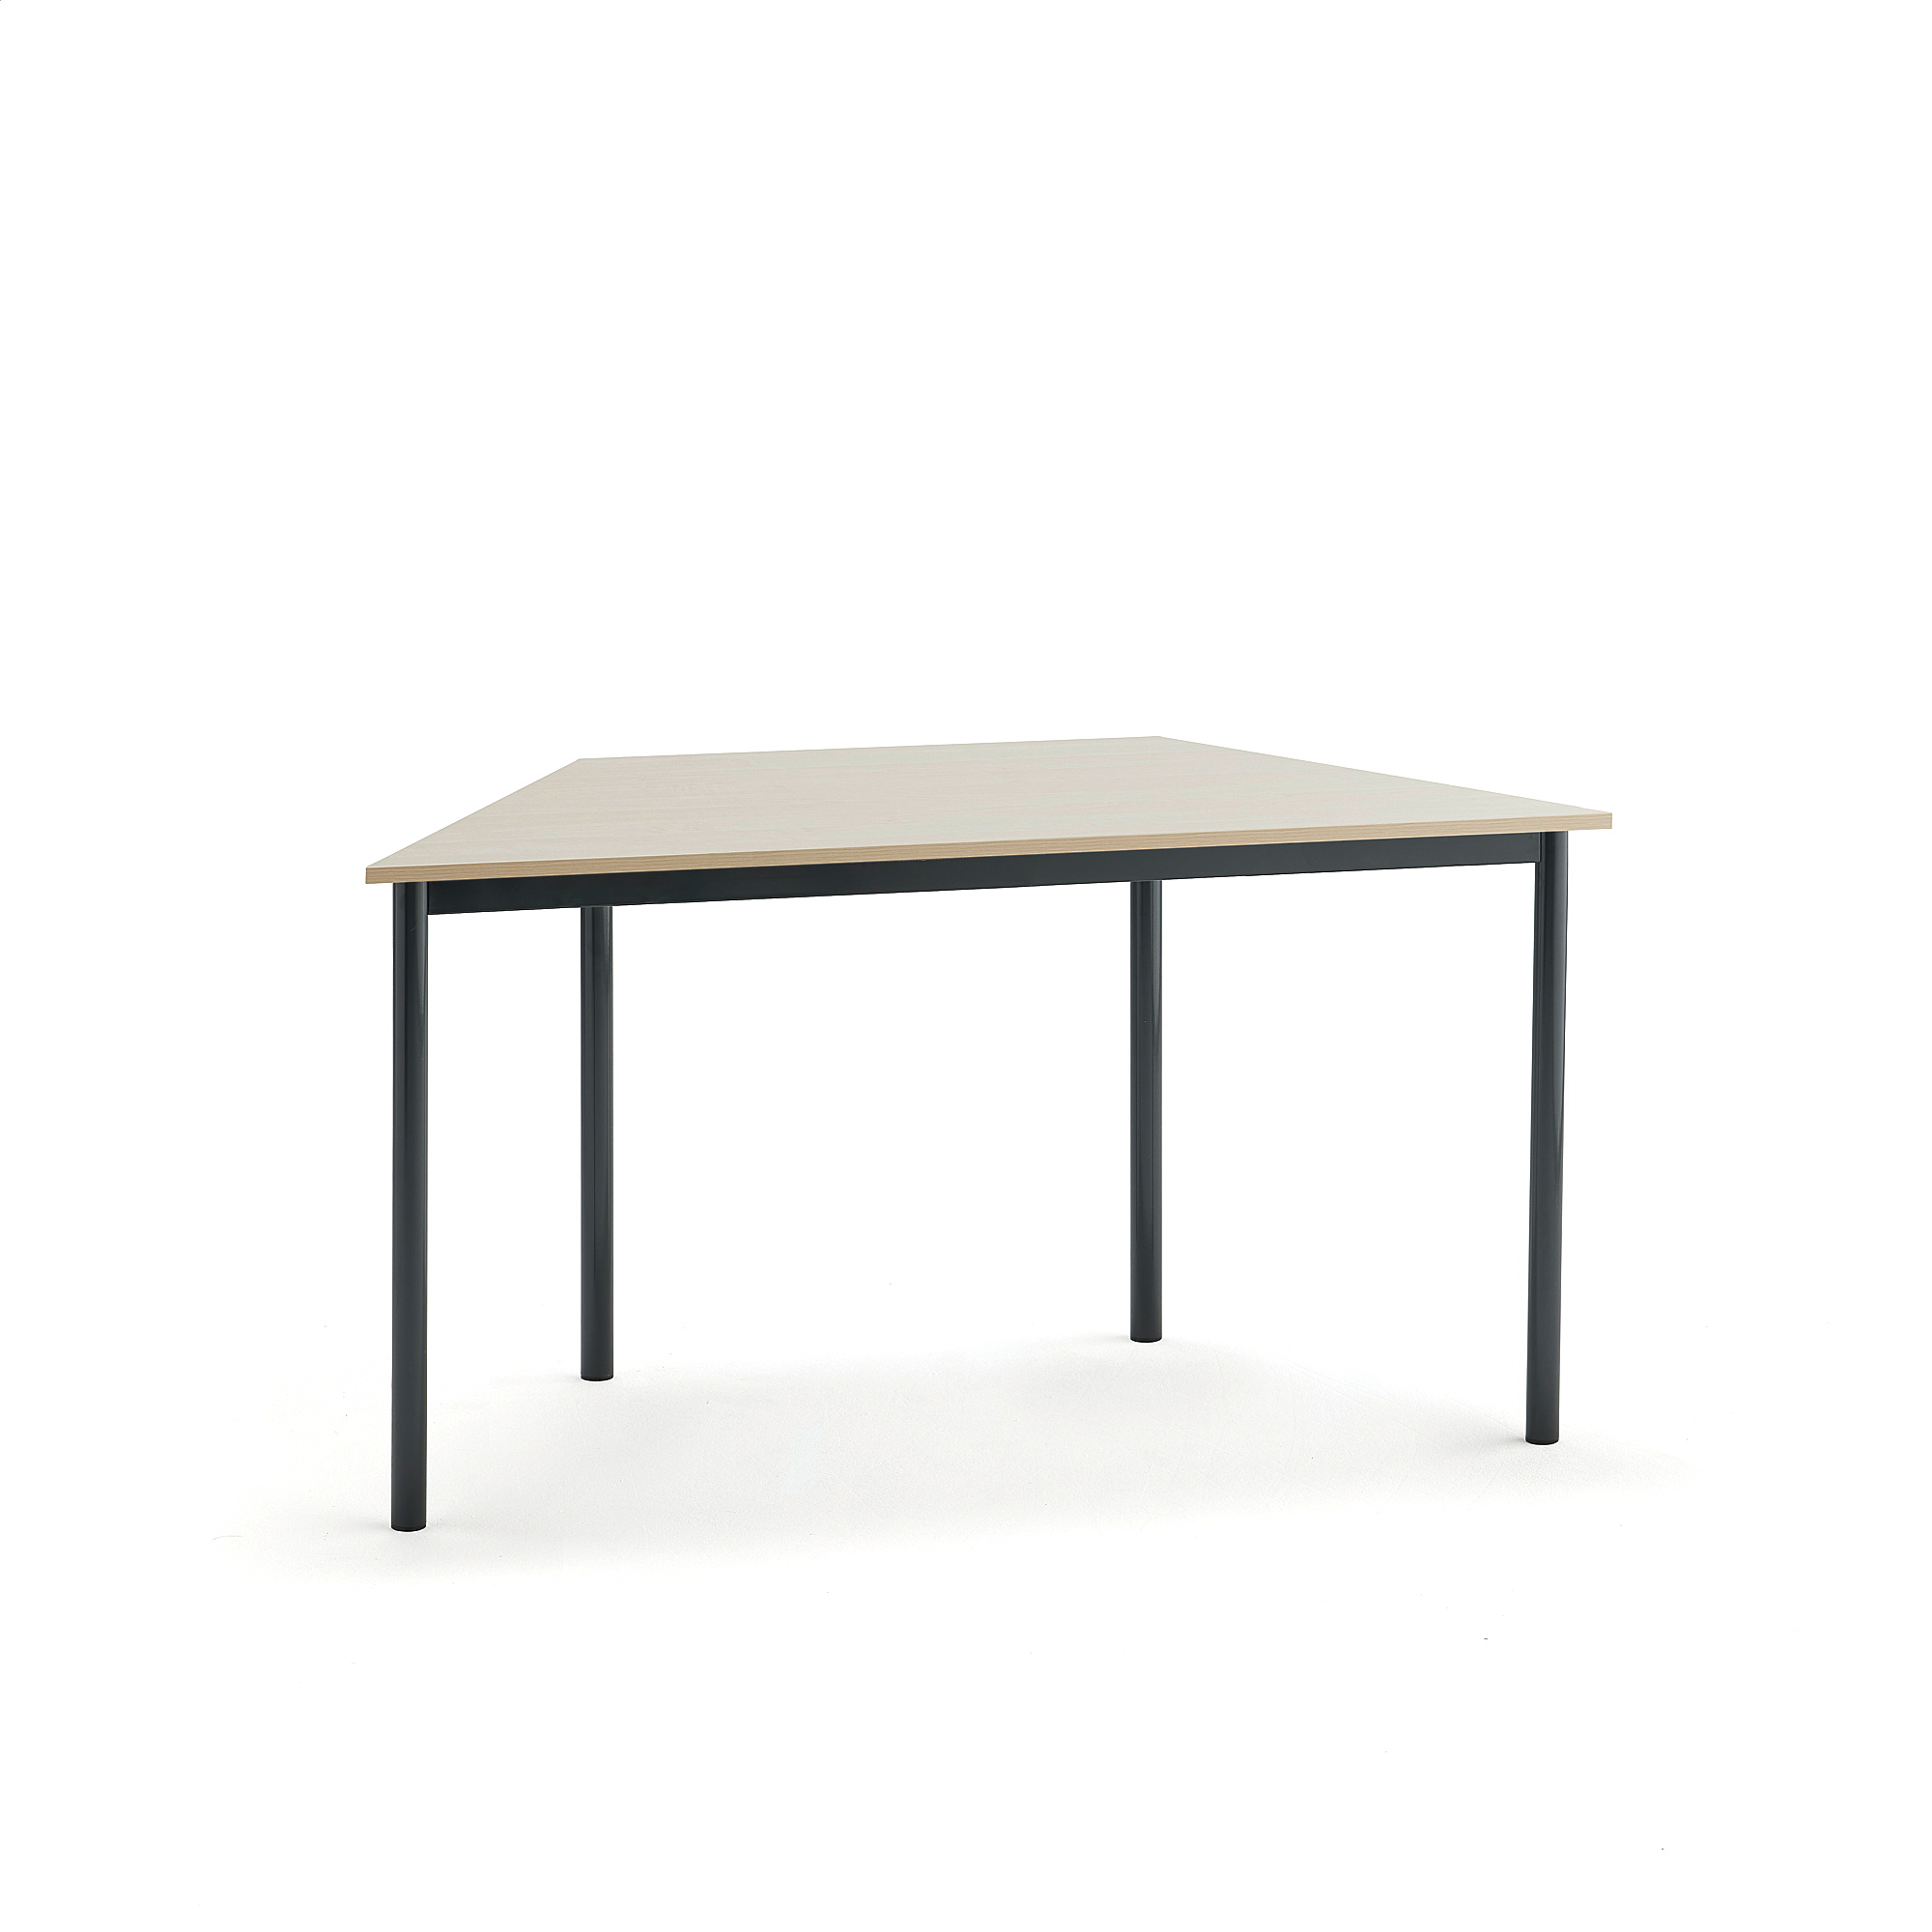 Stůl BORÅS TRAPETS, 1400x700x720 mm, antracitově šedé nohy, HPL deska, bříza